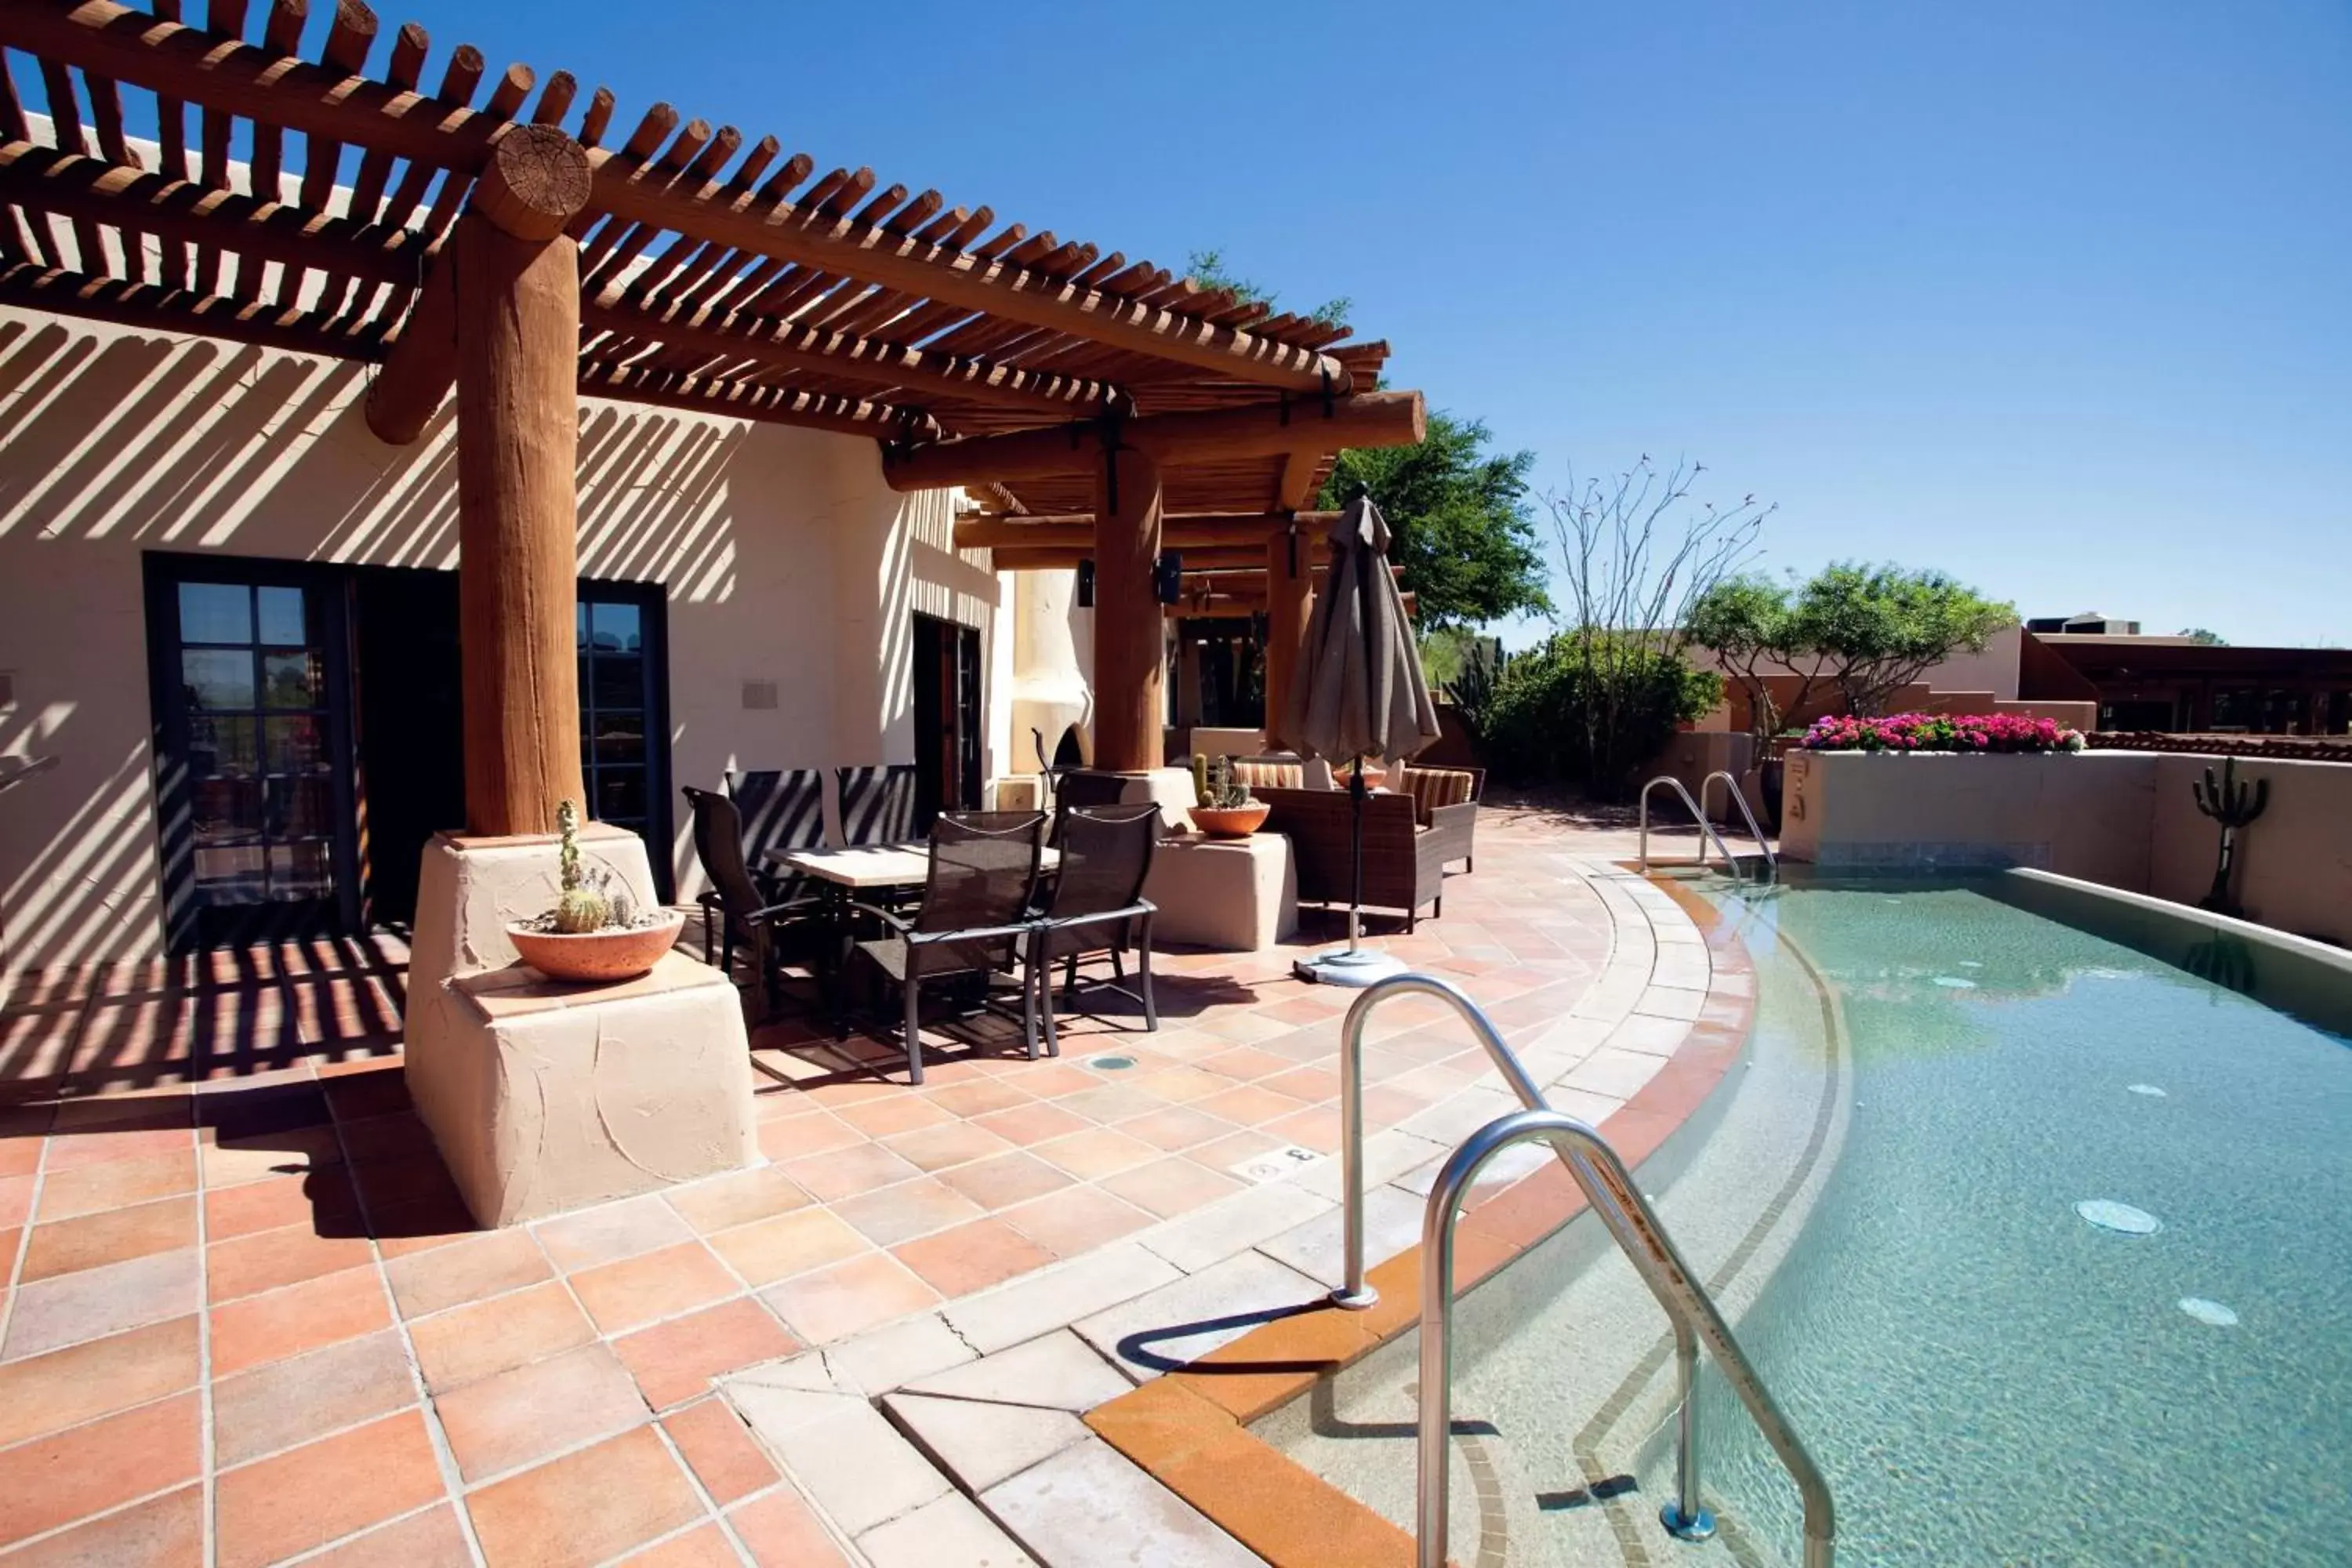 Swimming Pool in JW Marriott Scottsdale Camelback Inn Resort & Spa